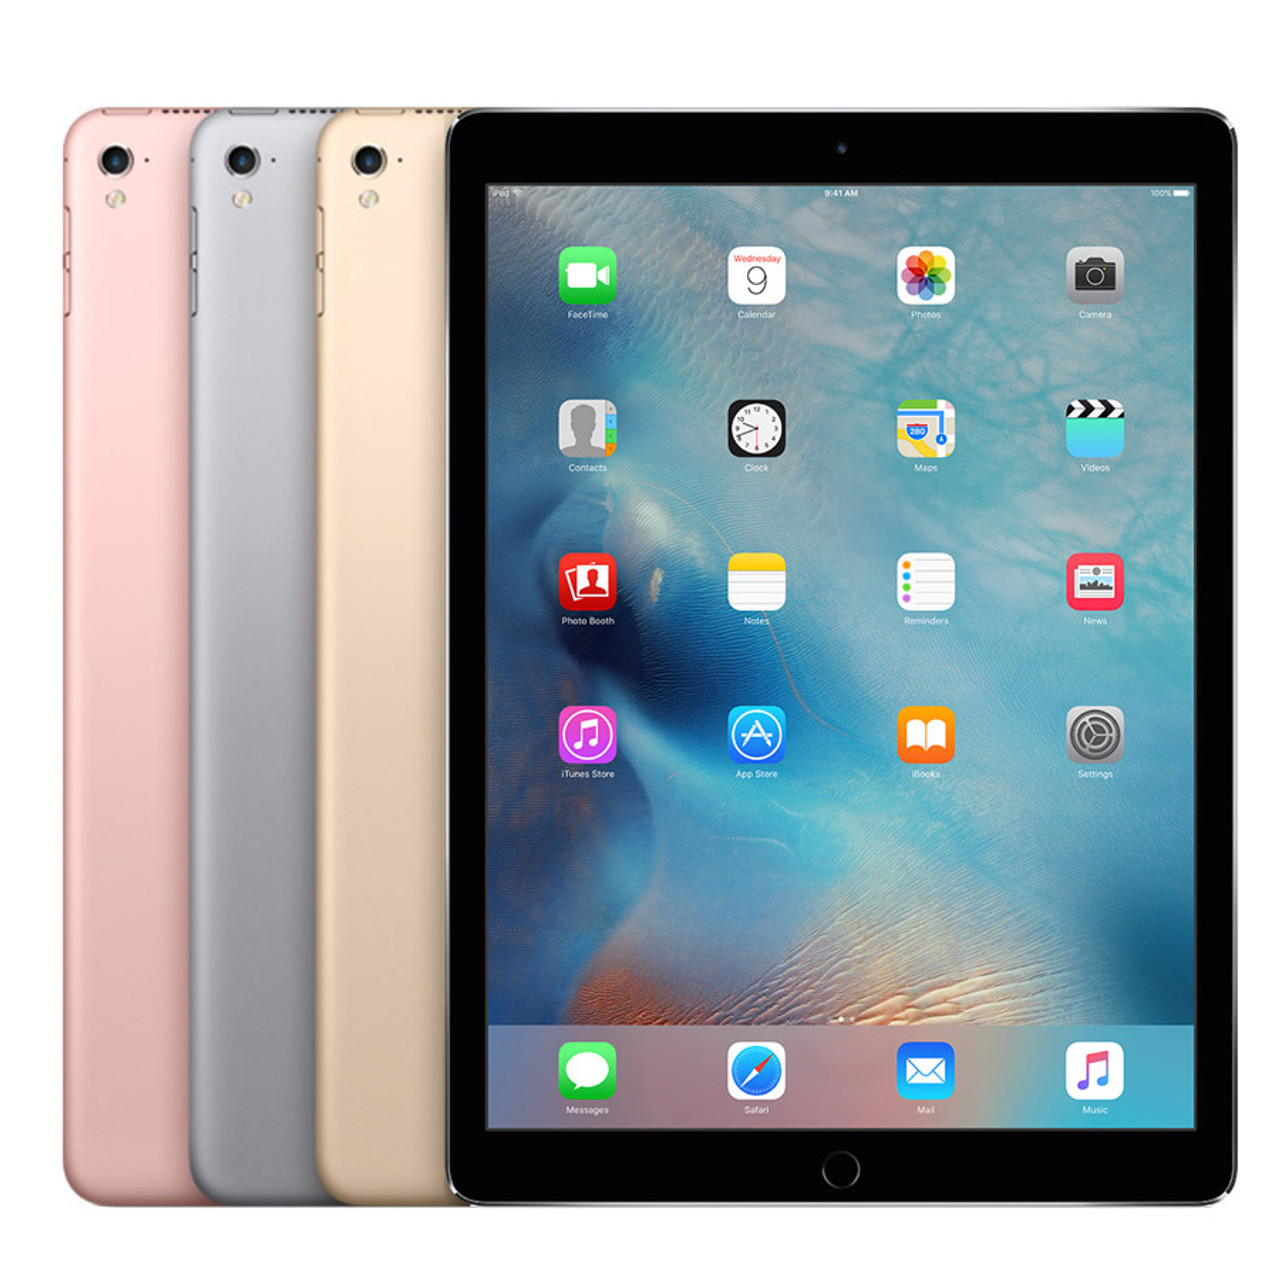 Apple iPad Pro 9.7-inch (128GB) Wi-Fi - Mac Me an Offer